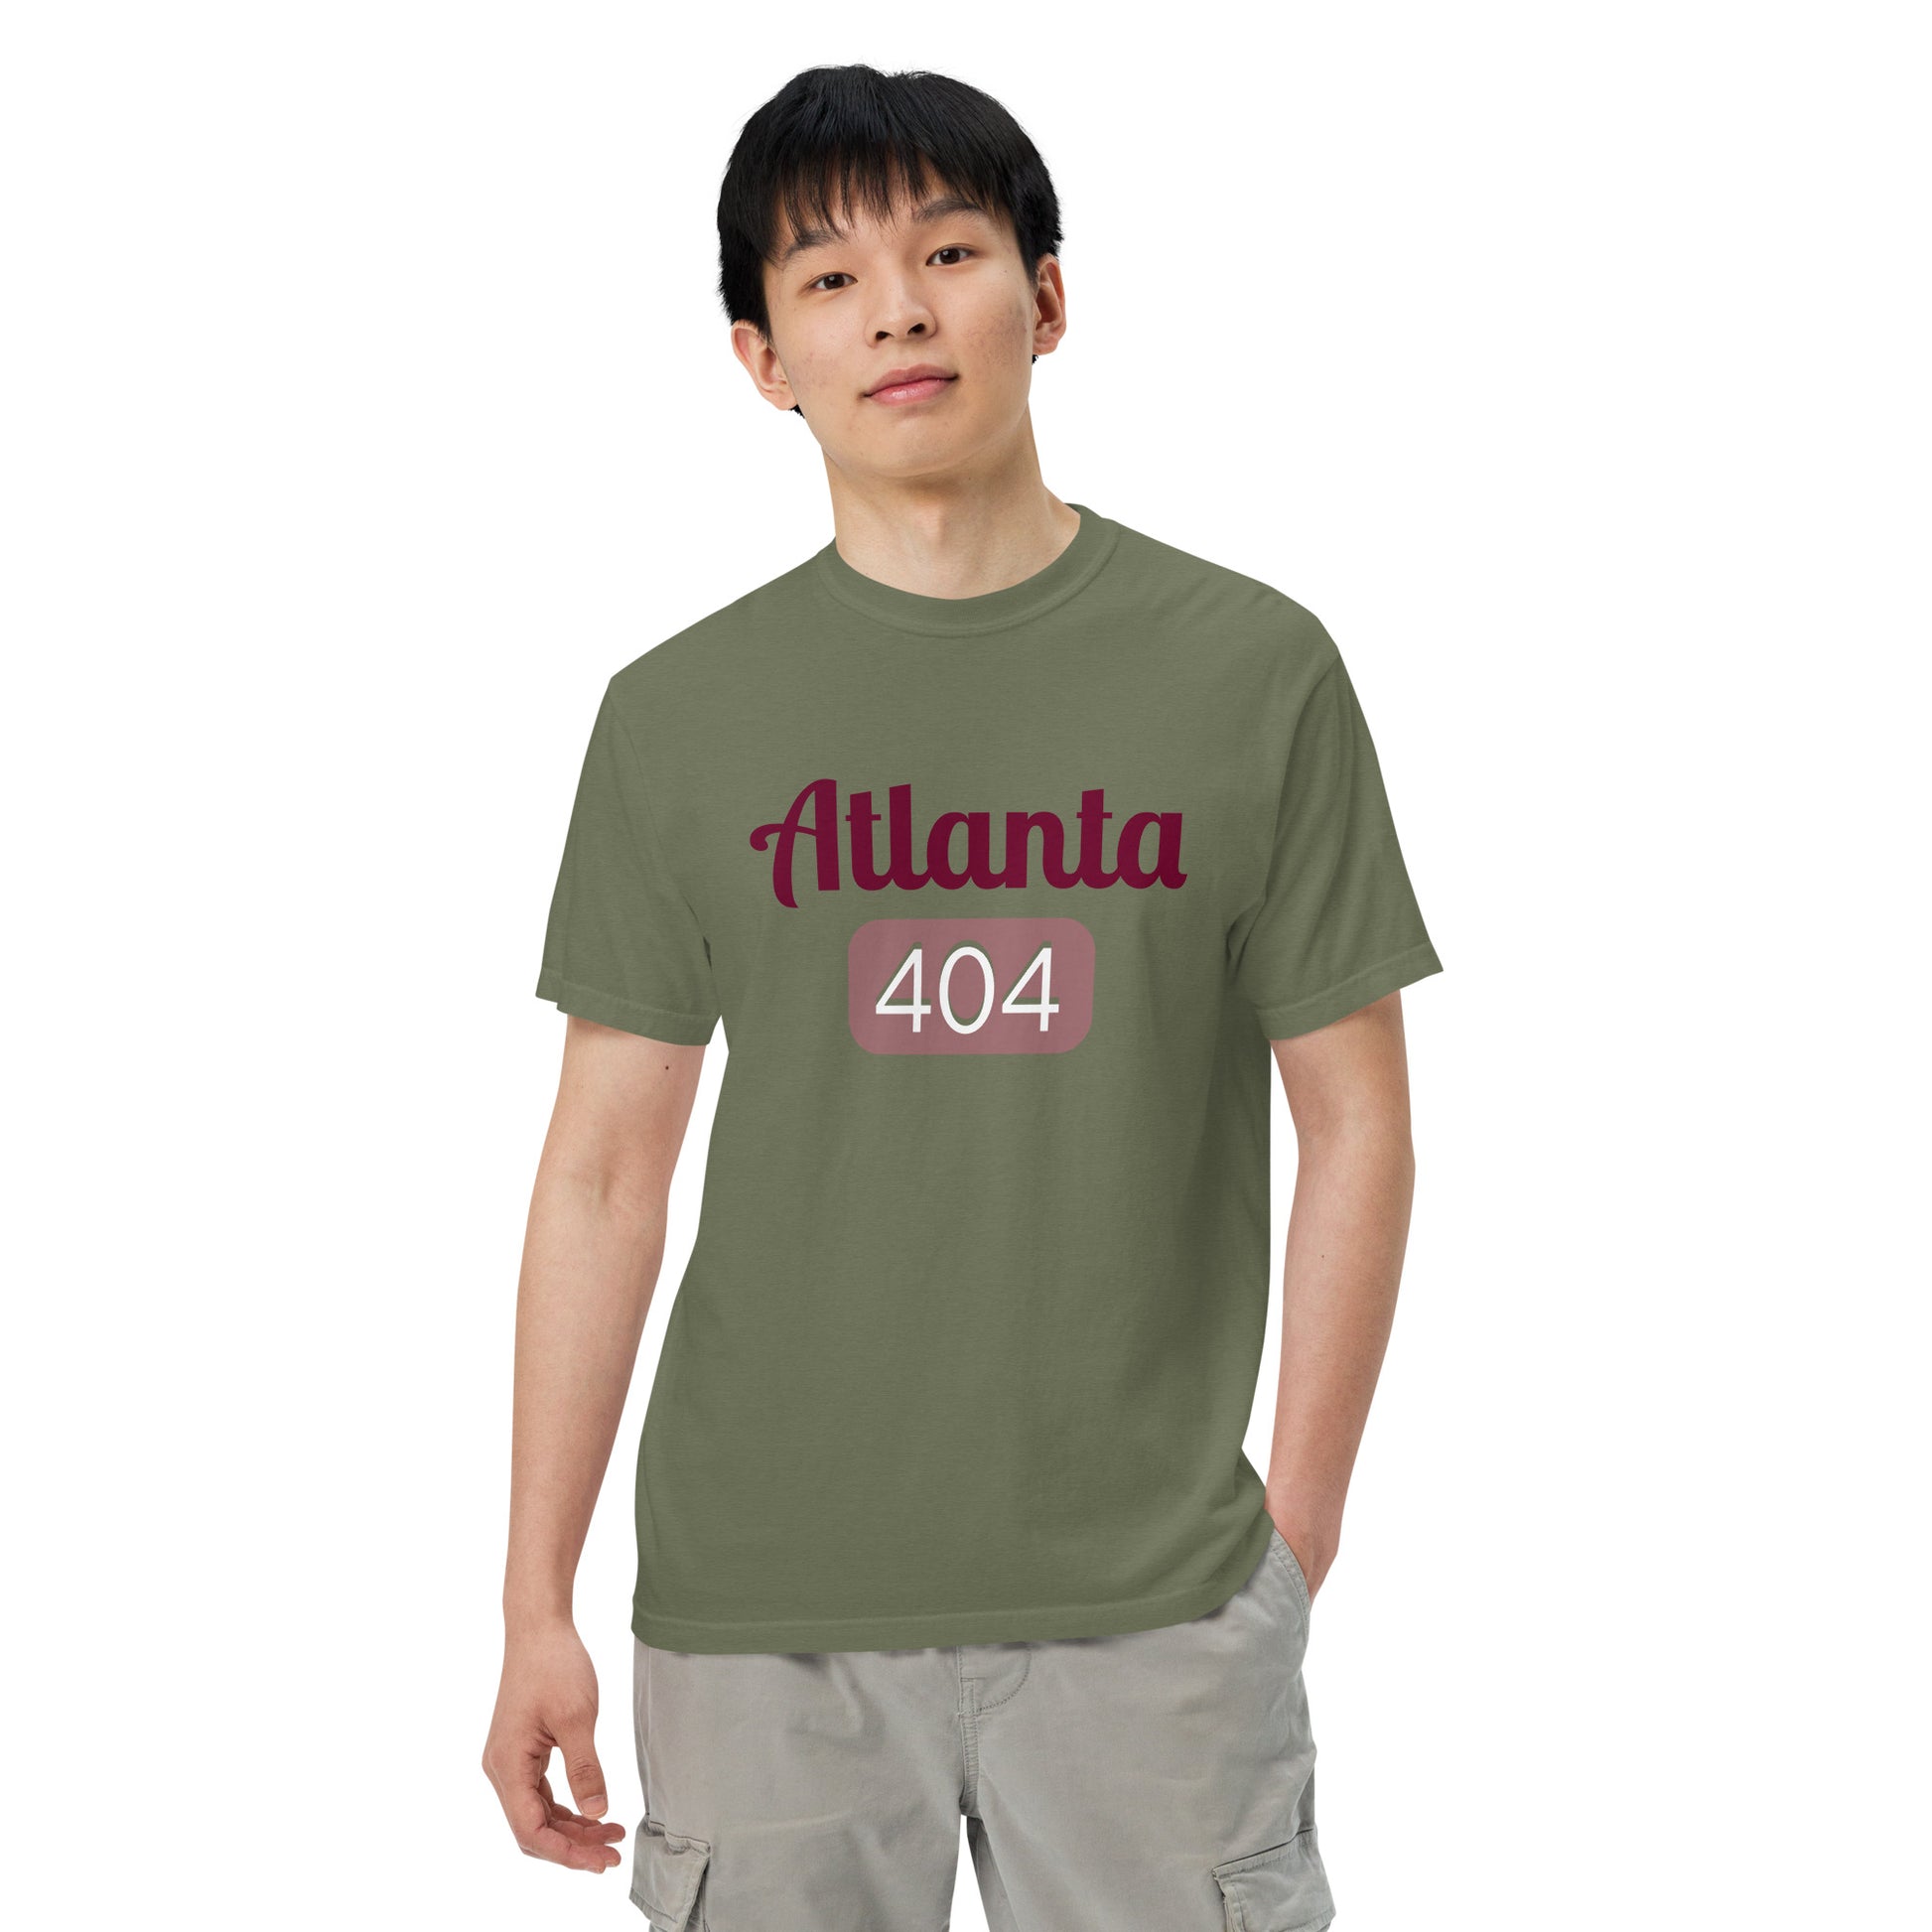 Atlanta 404 t-shirt in moss color